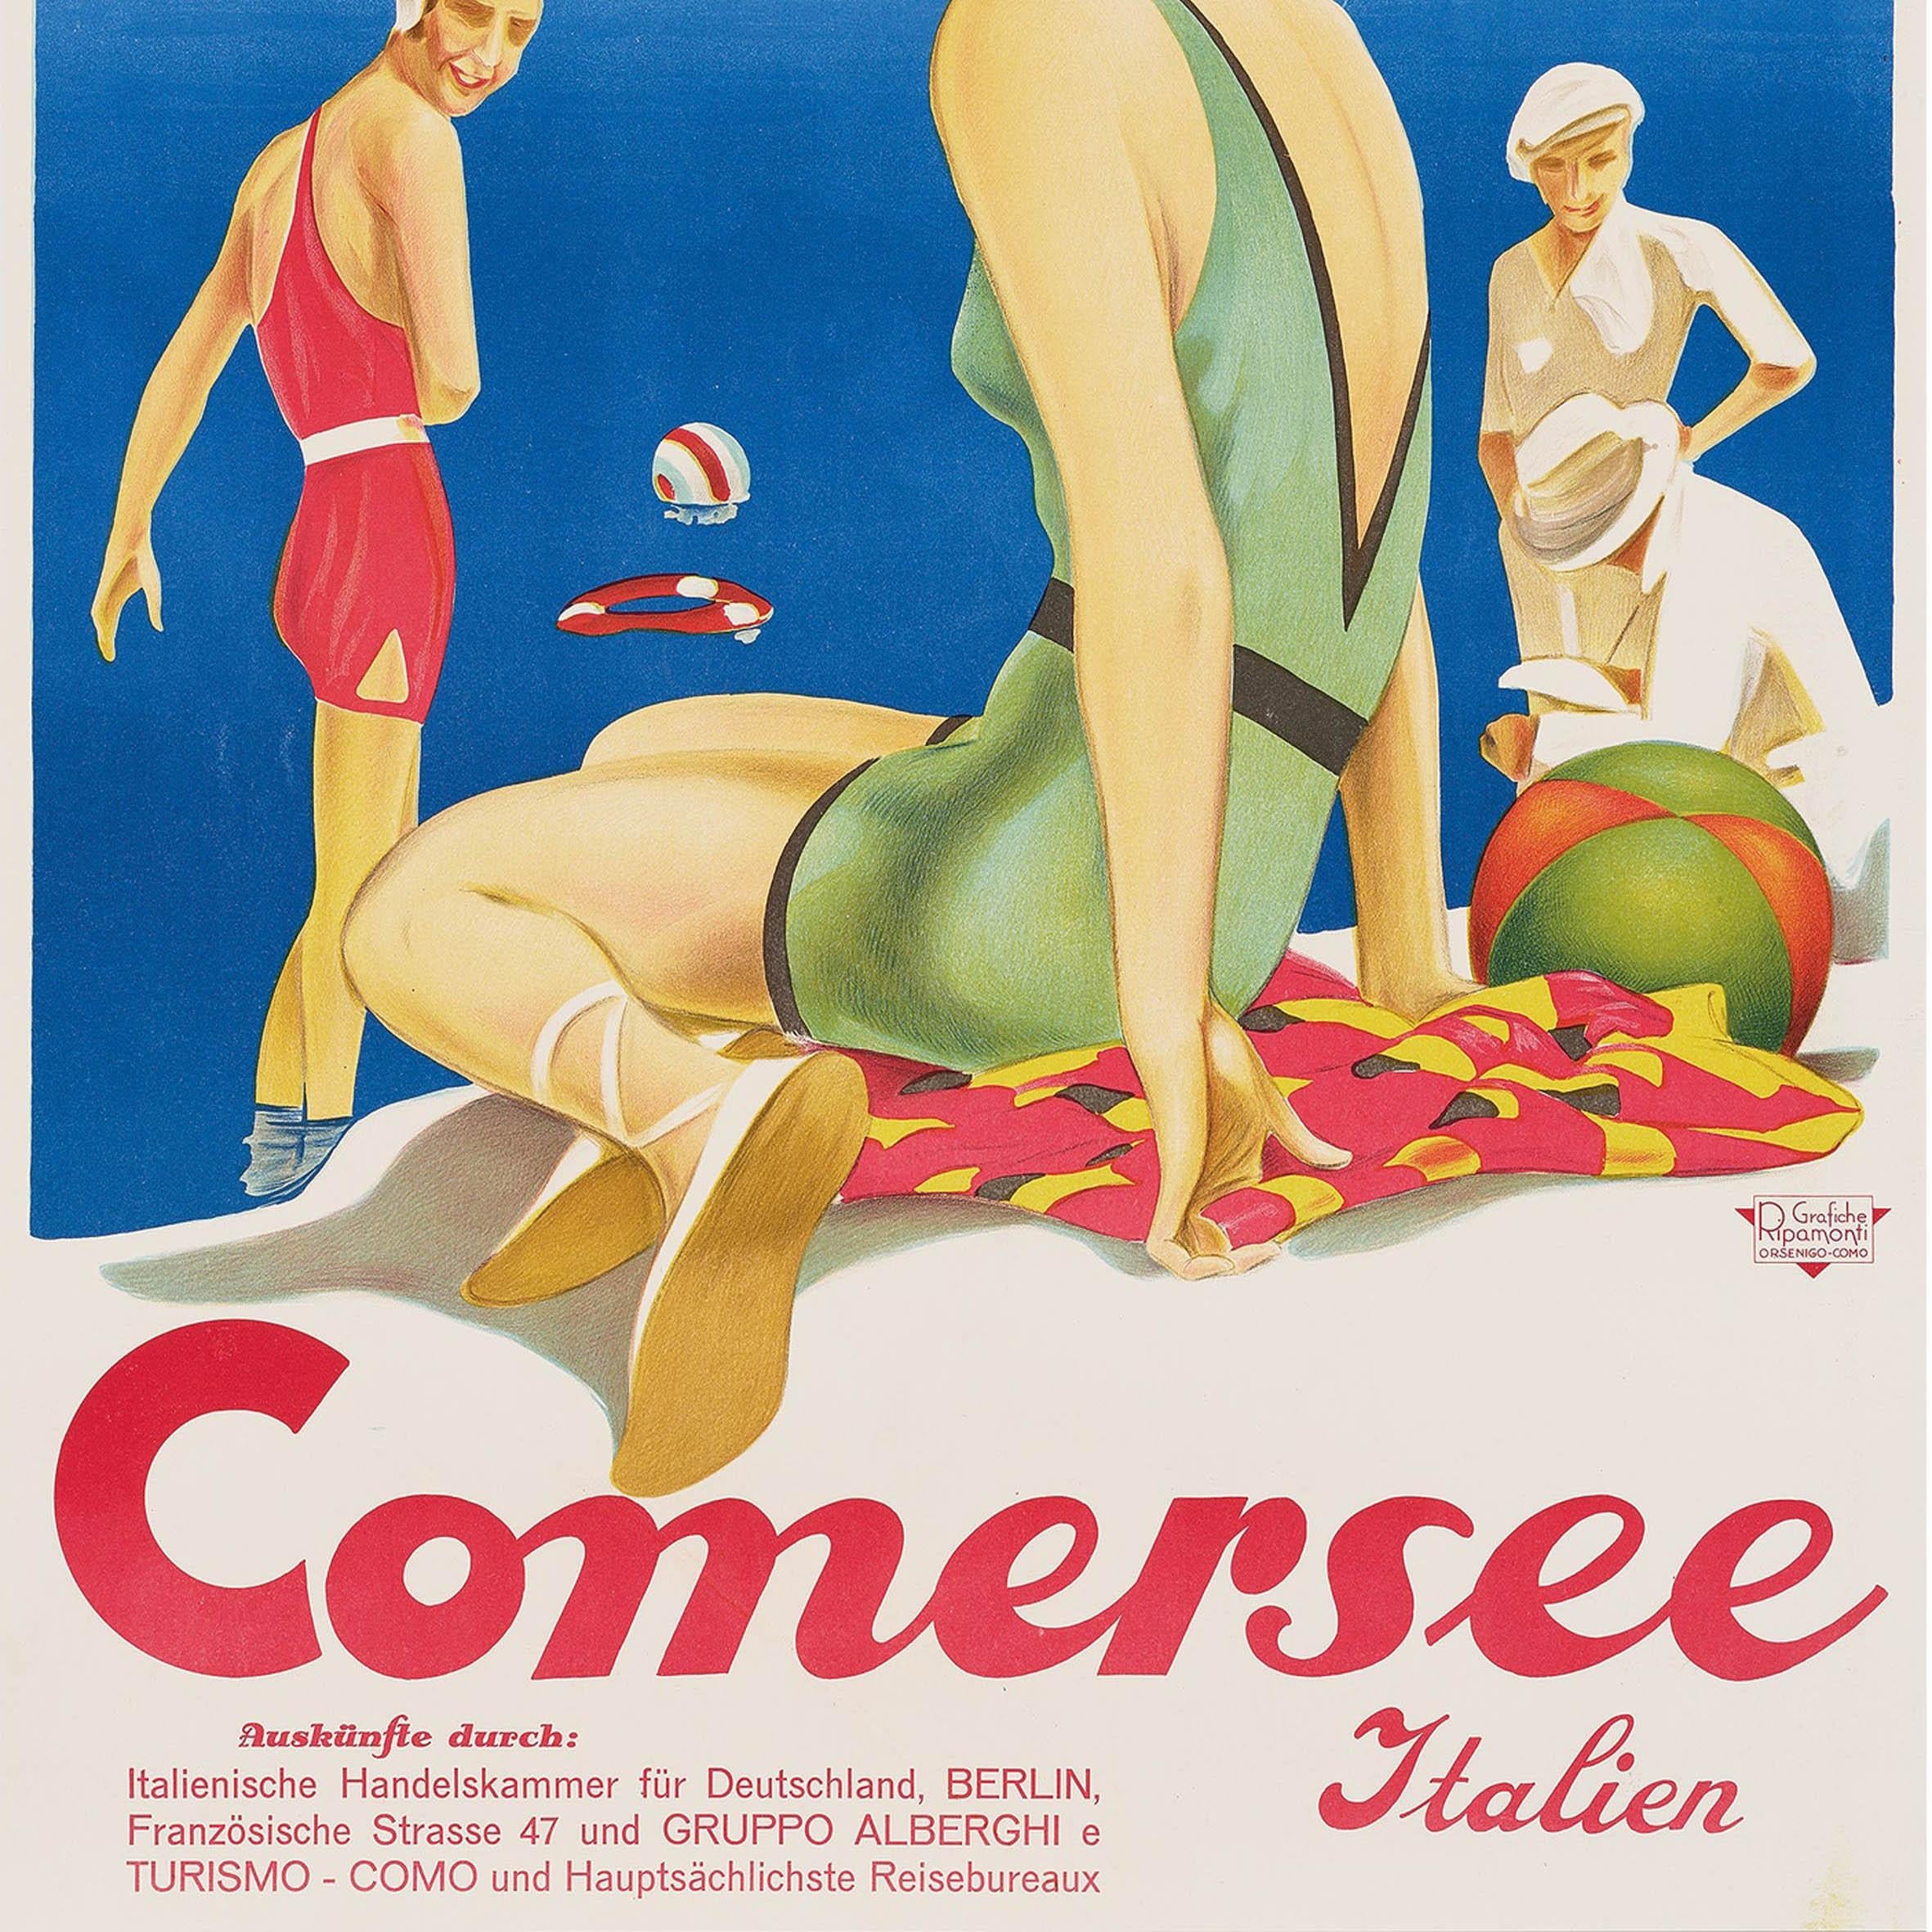 italien Original Vintage Travel Poster Lake Como Art Deco Bathers Comersee Italy Italien en vente